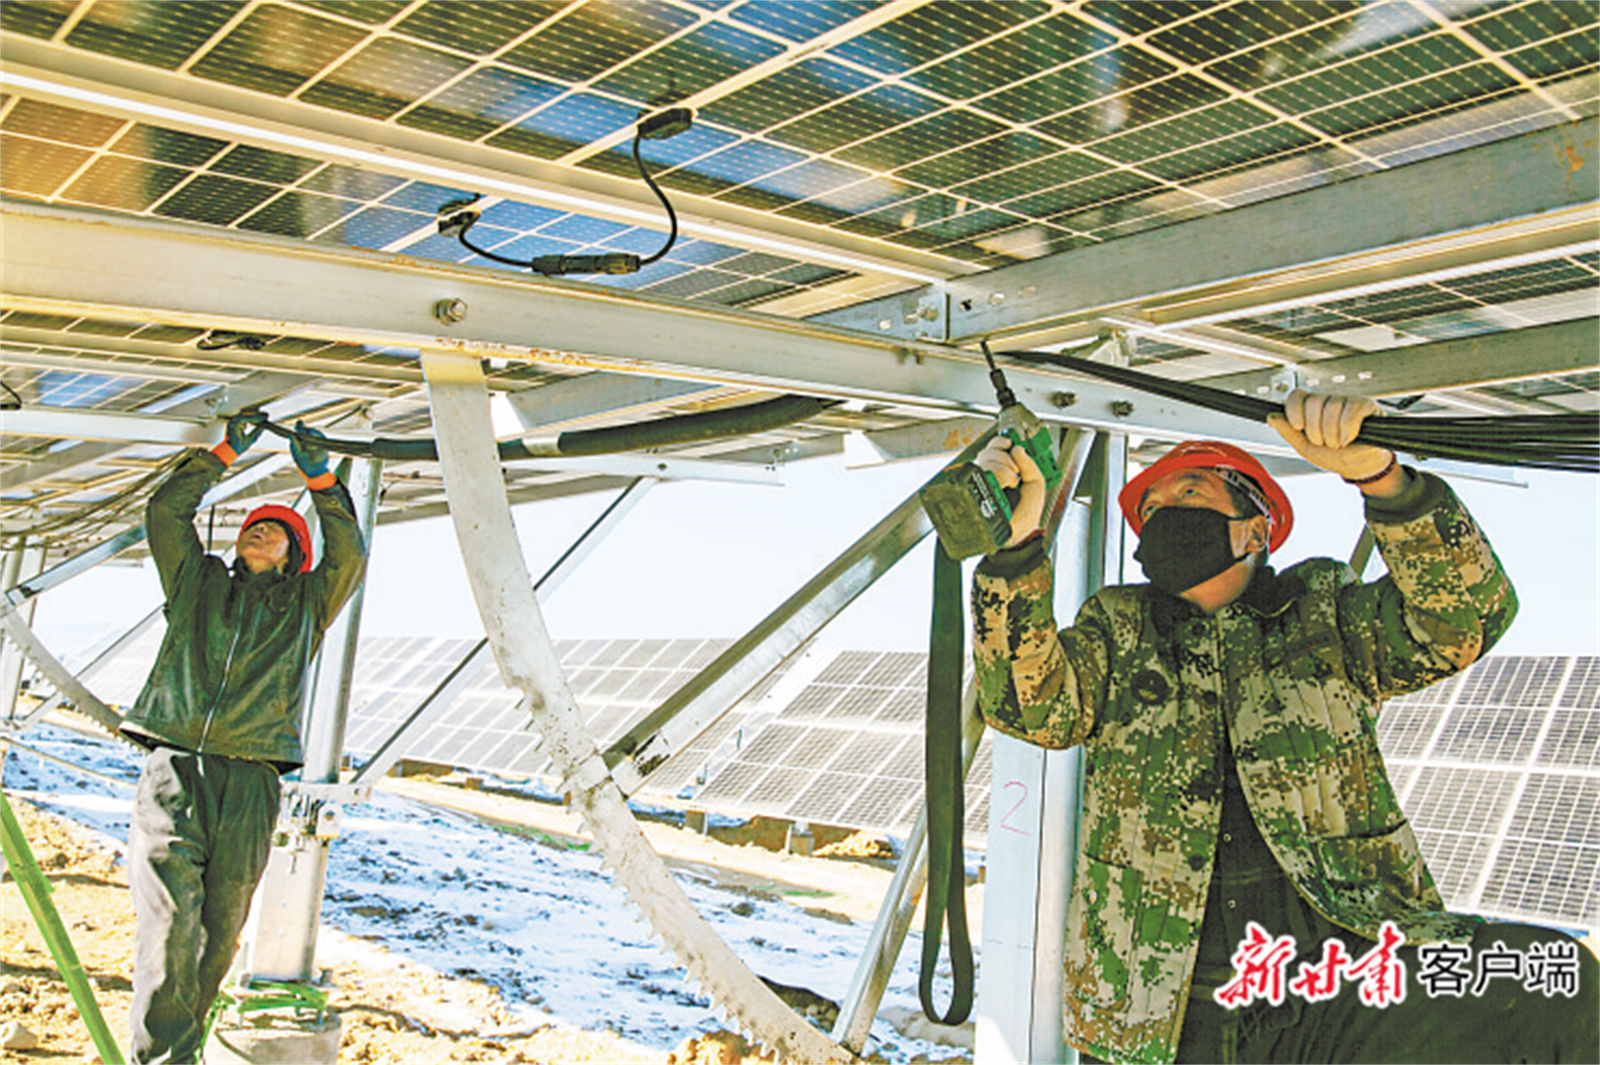 工作人员安装太阳能电池板 新甘肃·甘肃日报通讯员 成林